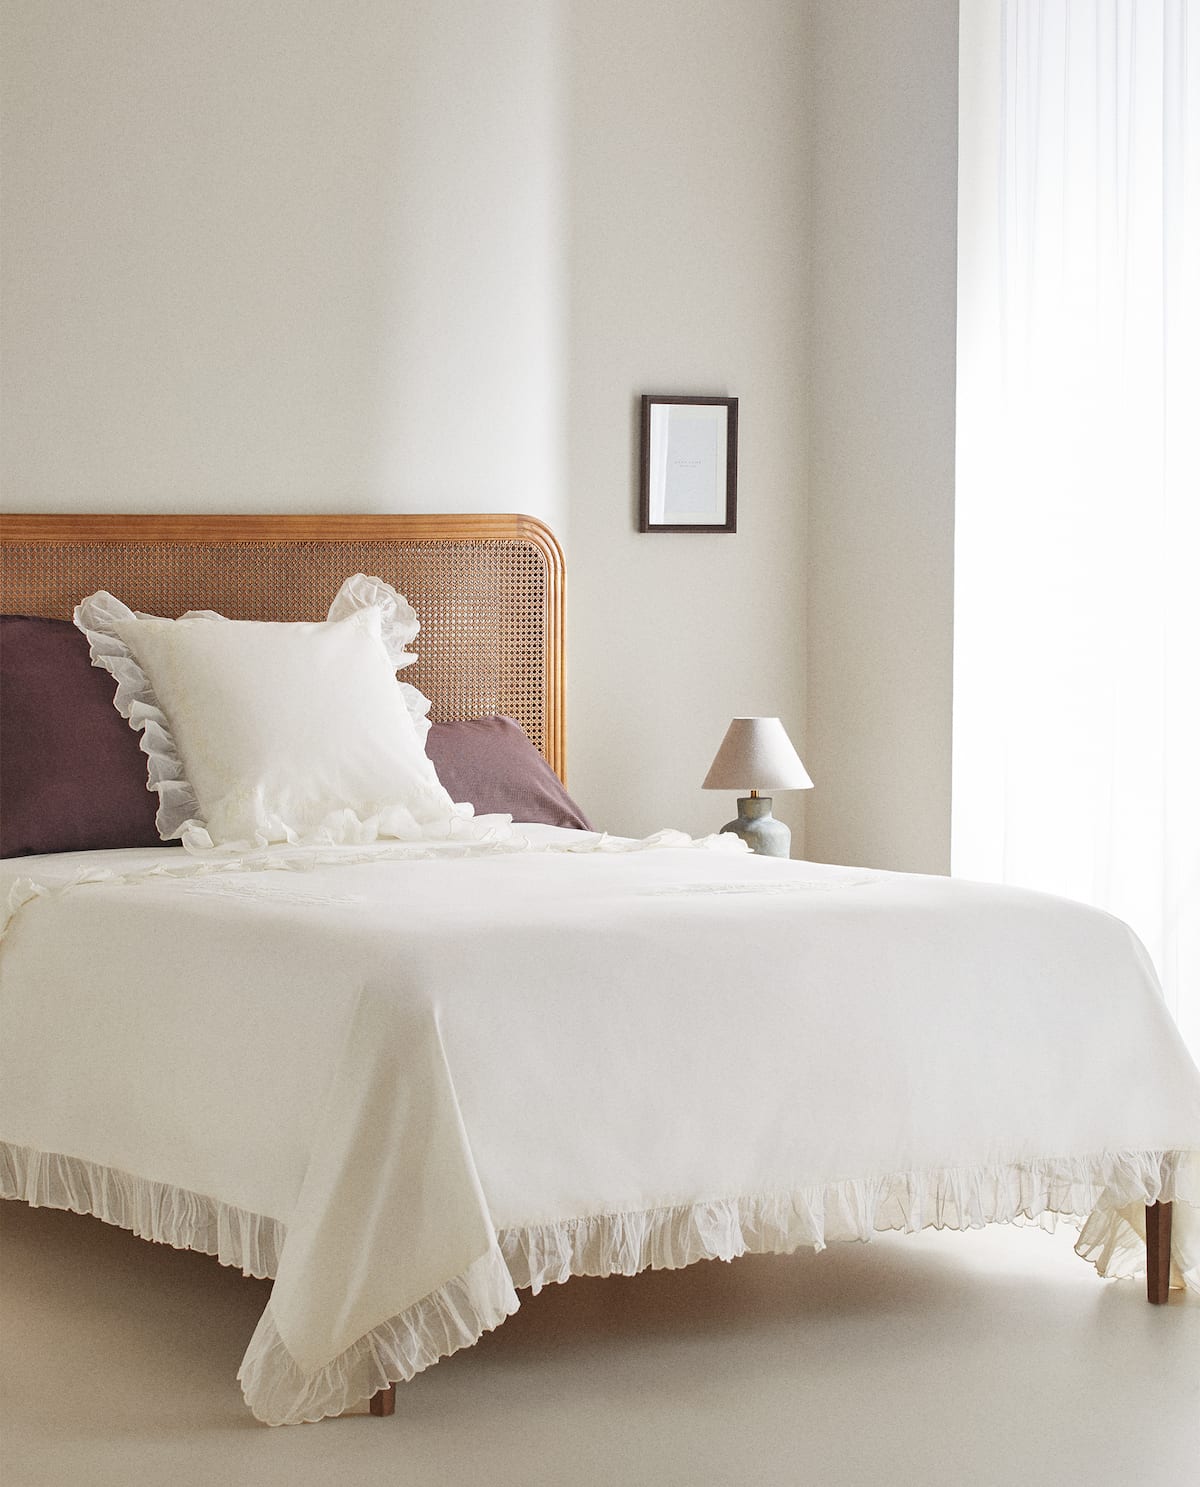 Zara Home vuelve al pasado con una colección de ropa de cama bordada y toallas con puntillas